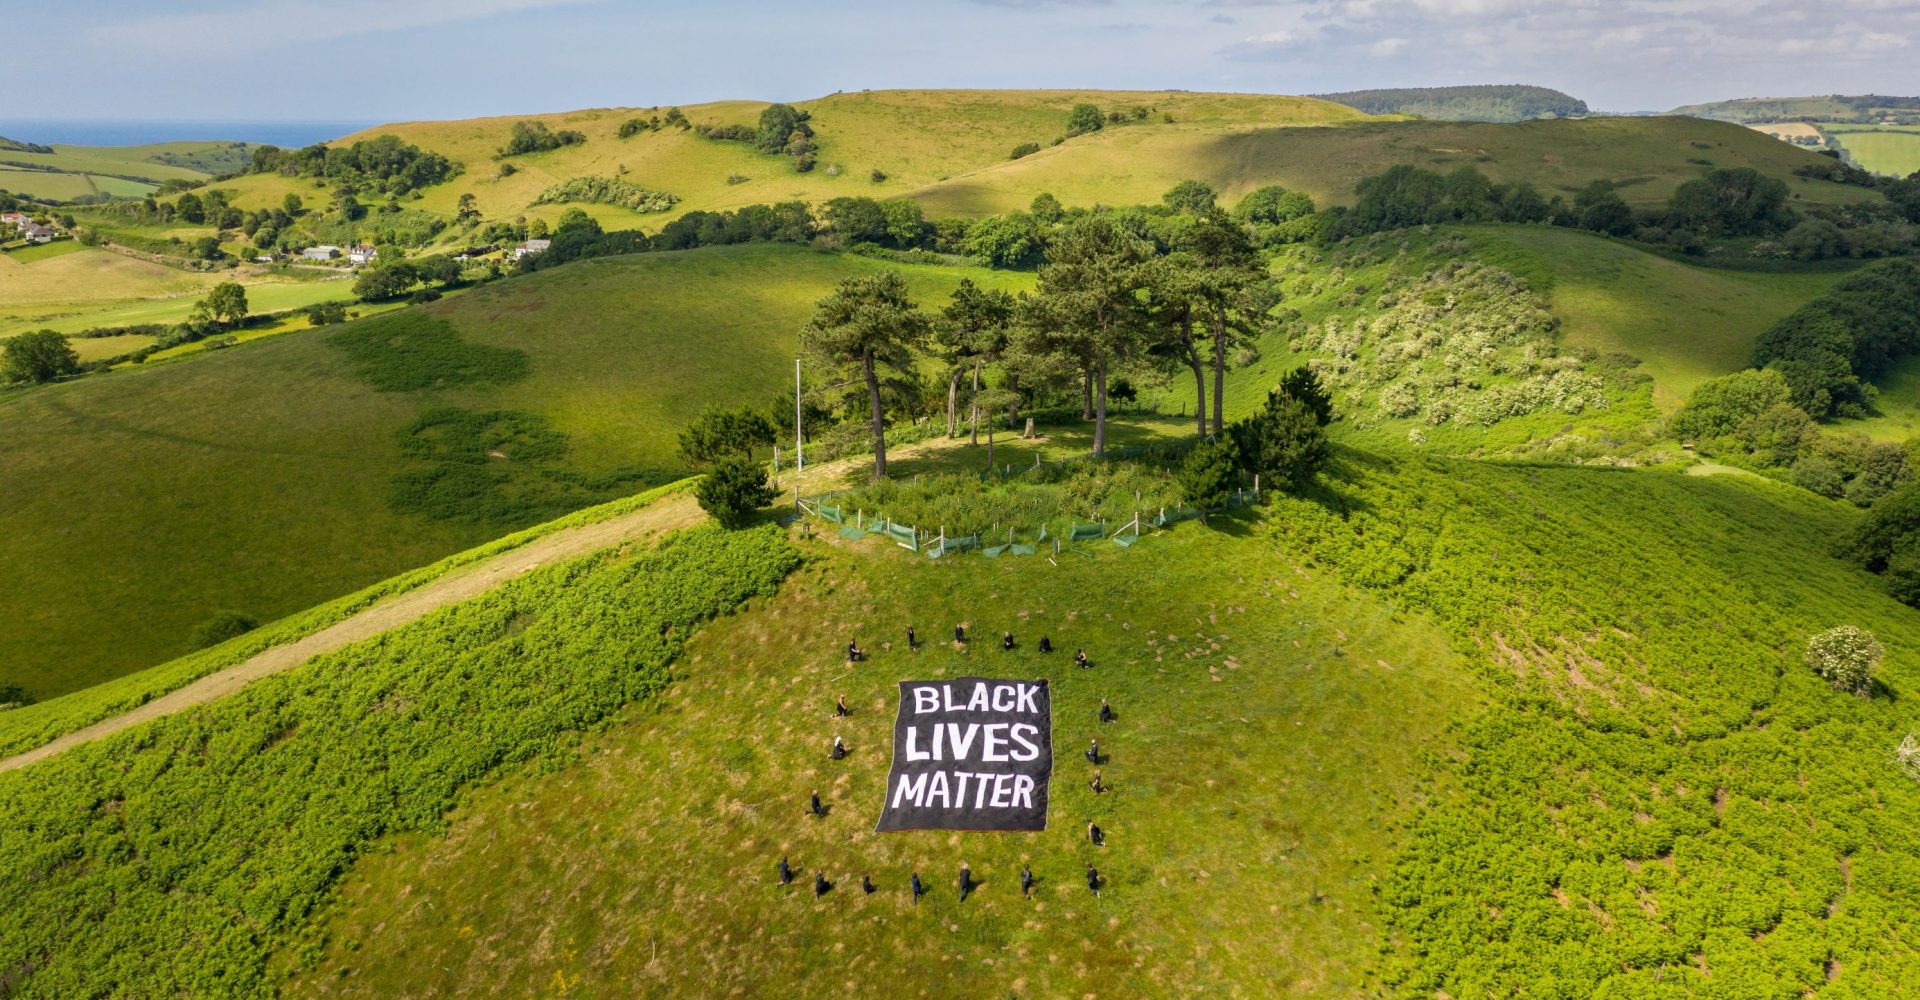 Black Lives Matter banner in Dorset landscape with protesters